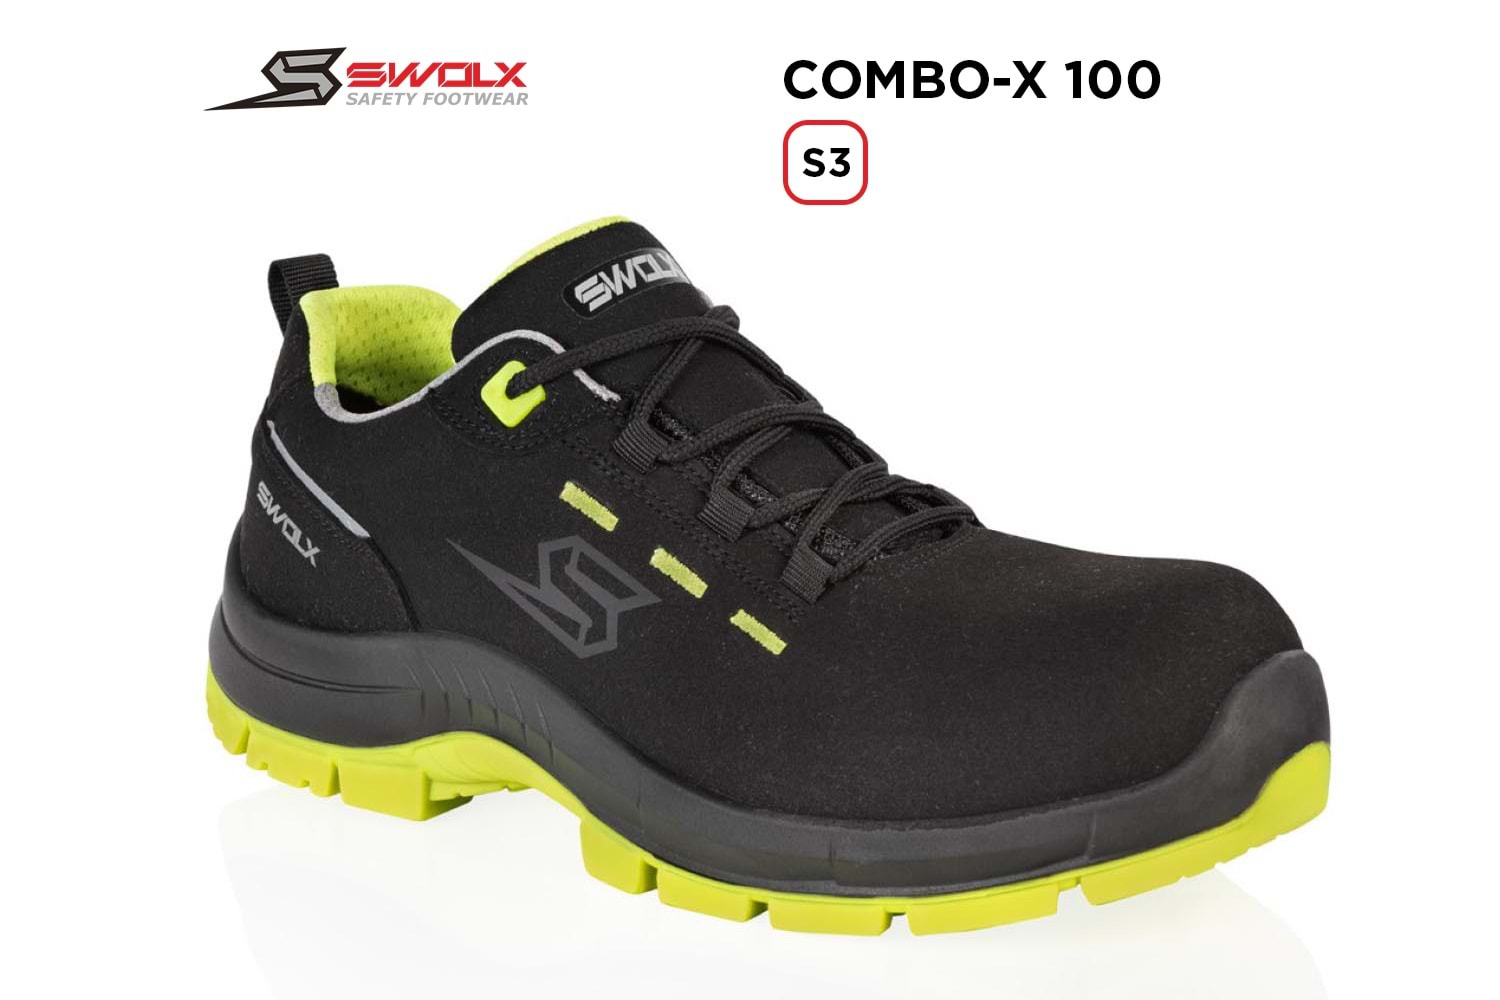 Swolx İş Ayakkabısı - Combo-X 100 S3 - 43